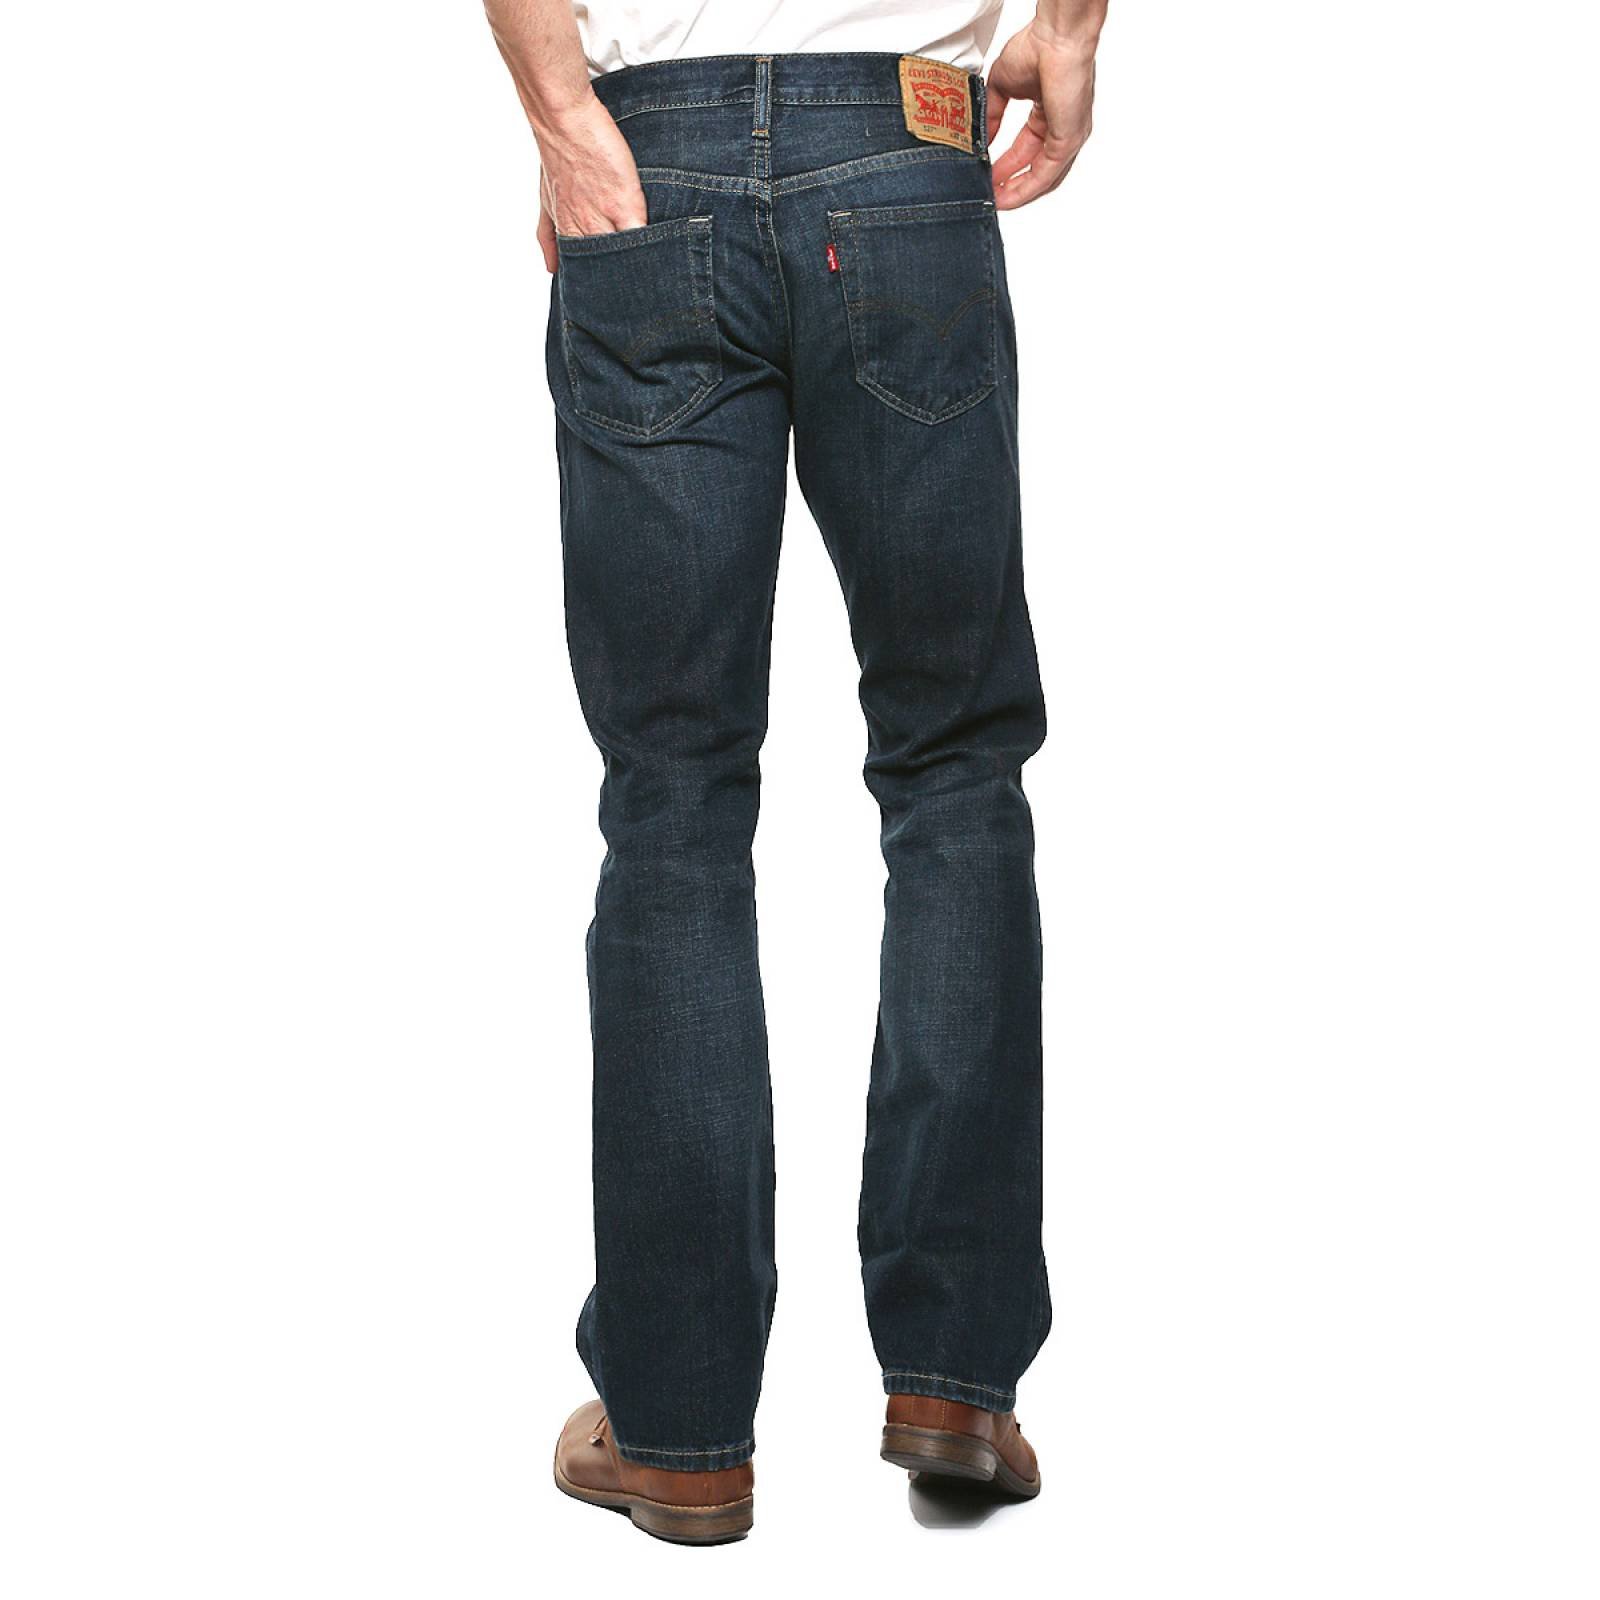 Jeans 527 Slim Boot Cut para Caballero